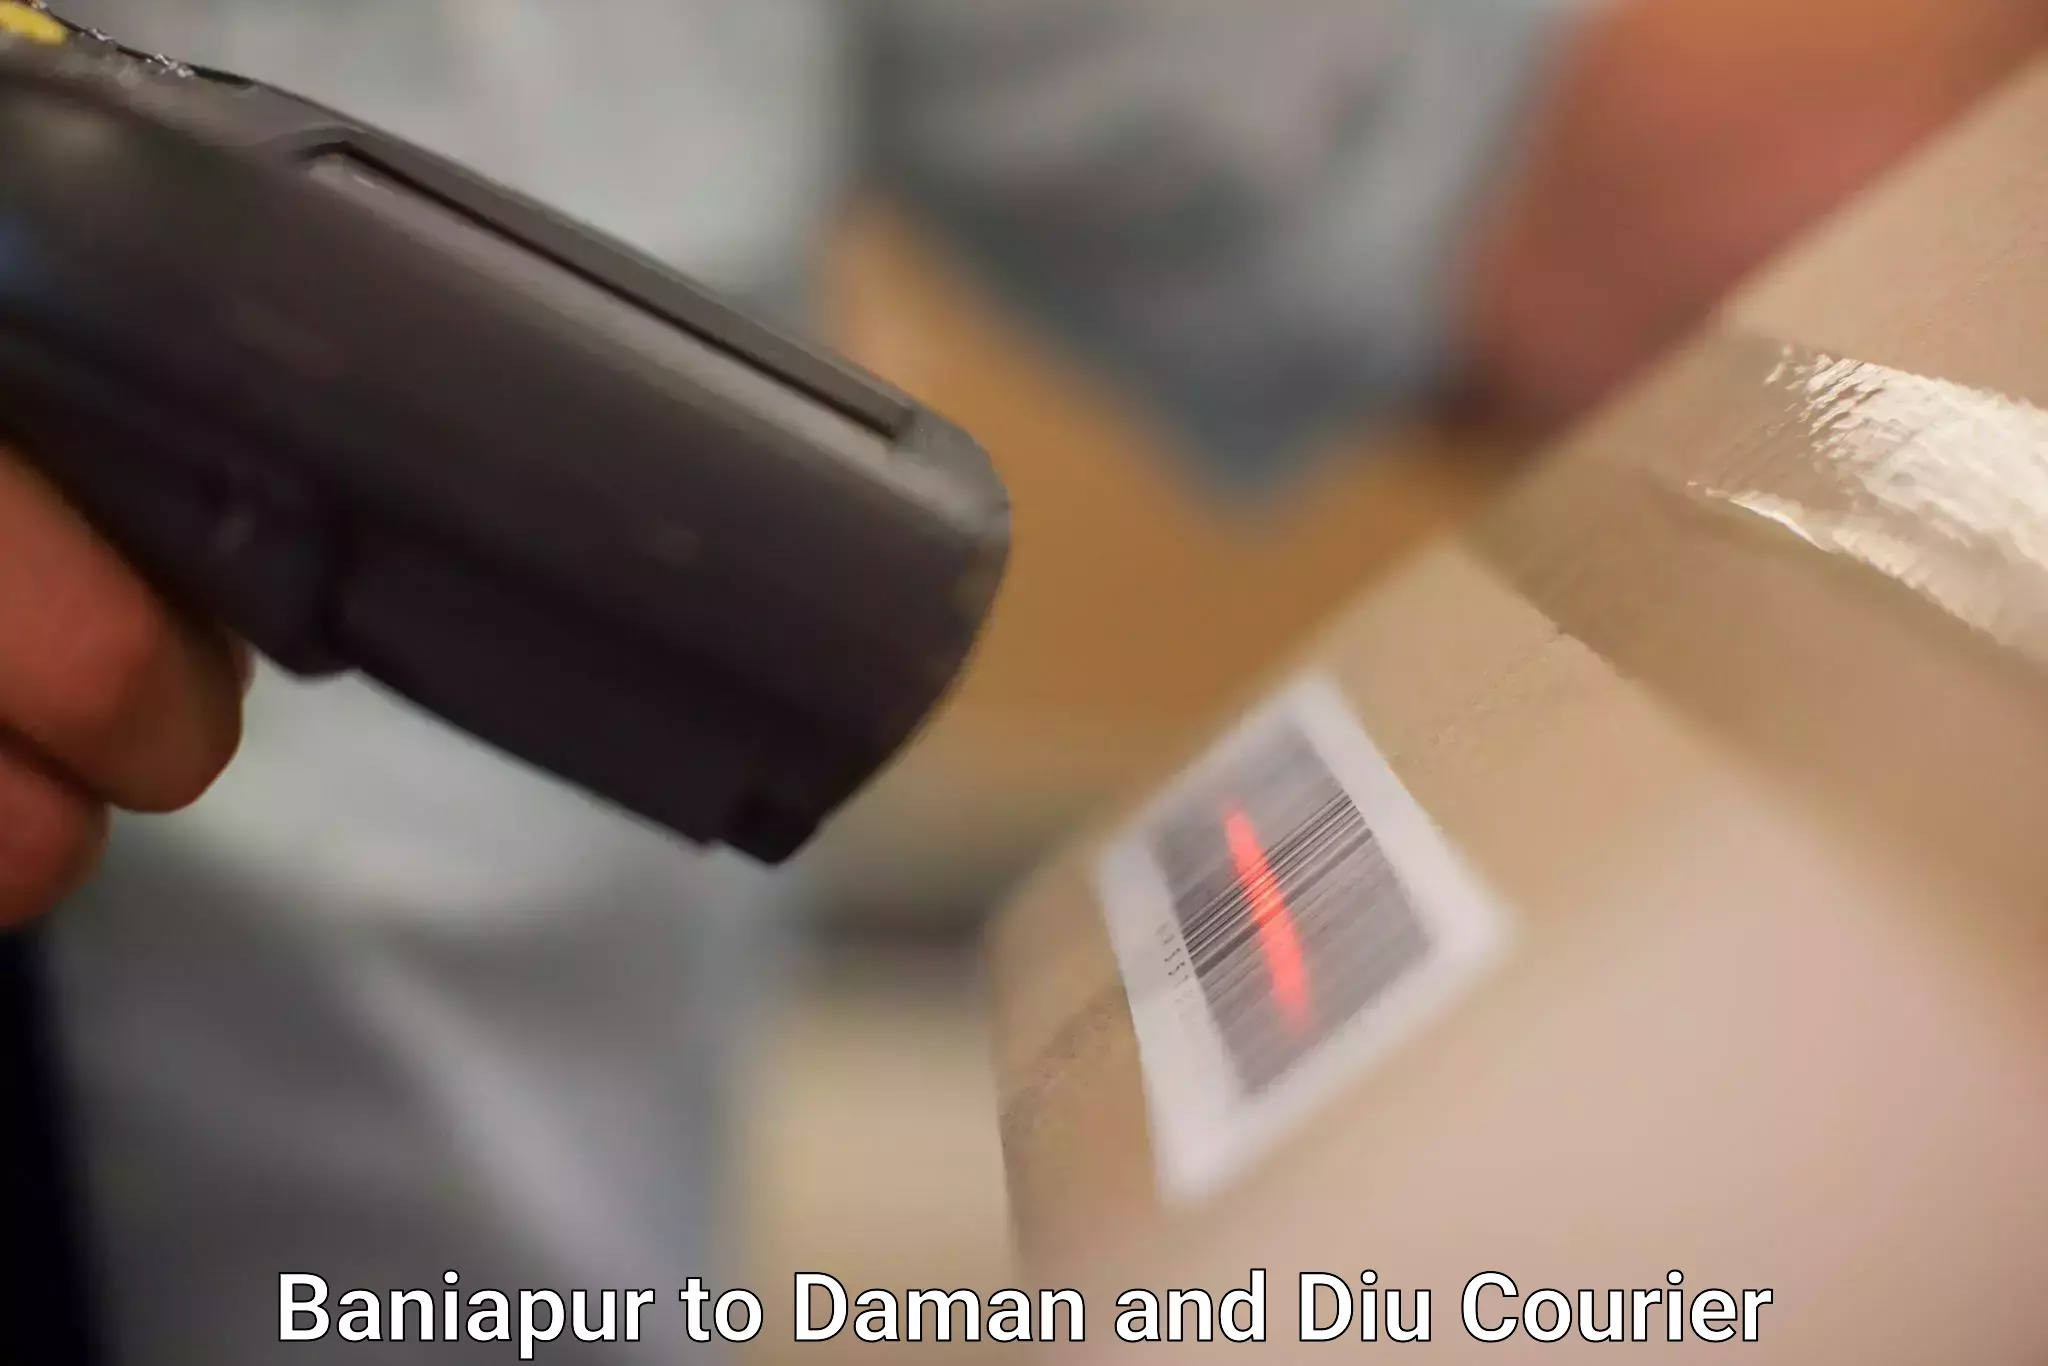 Online shipping calculator Baniapur to Diu